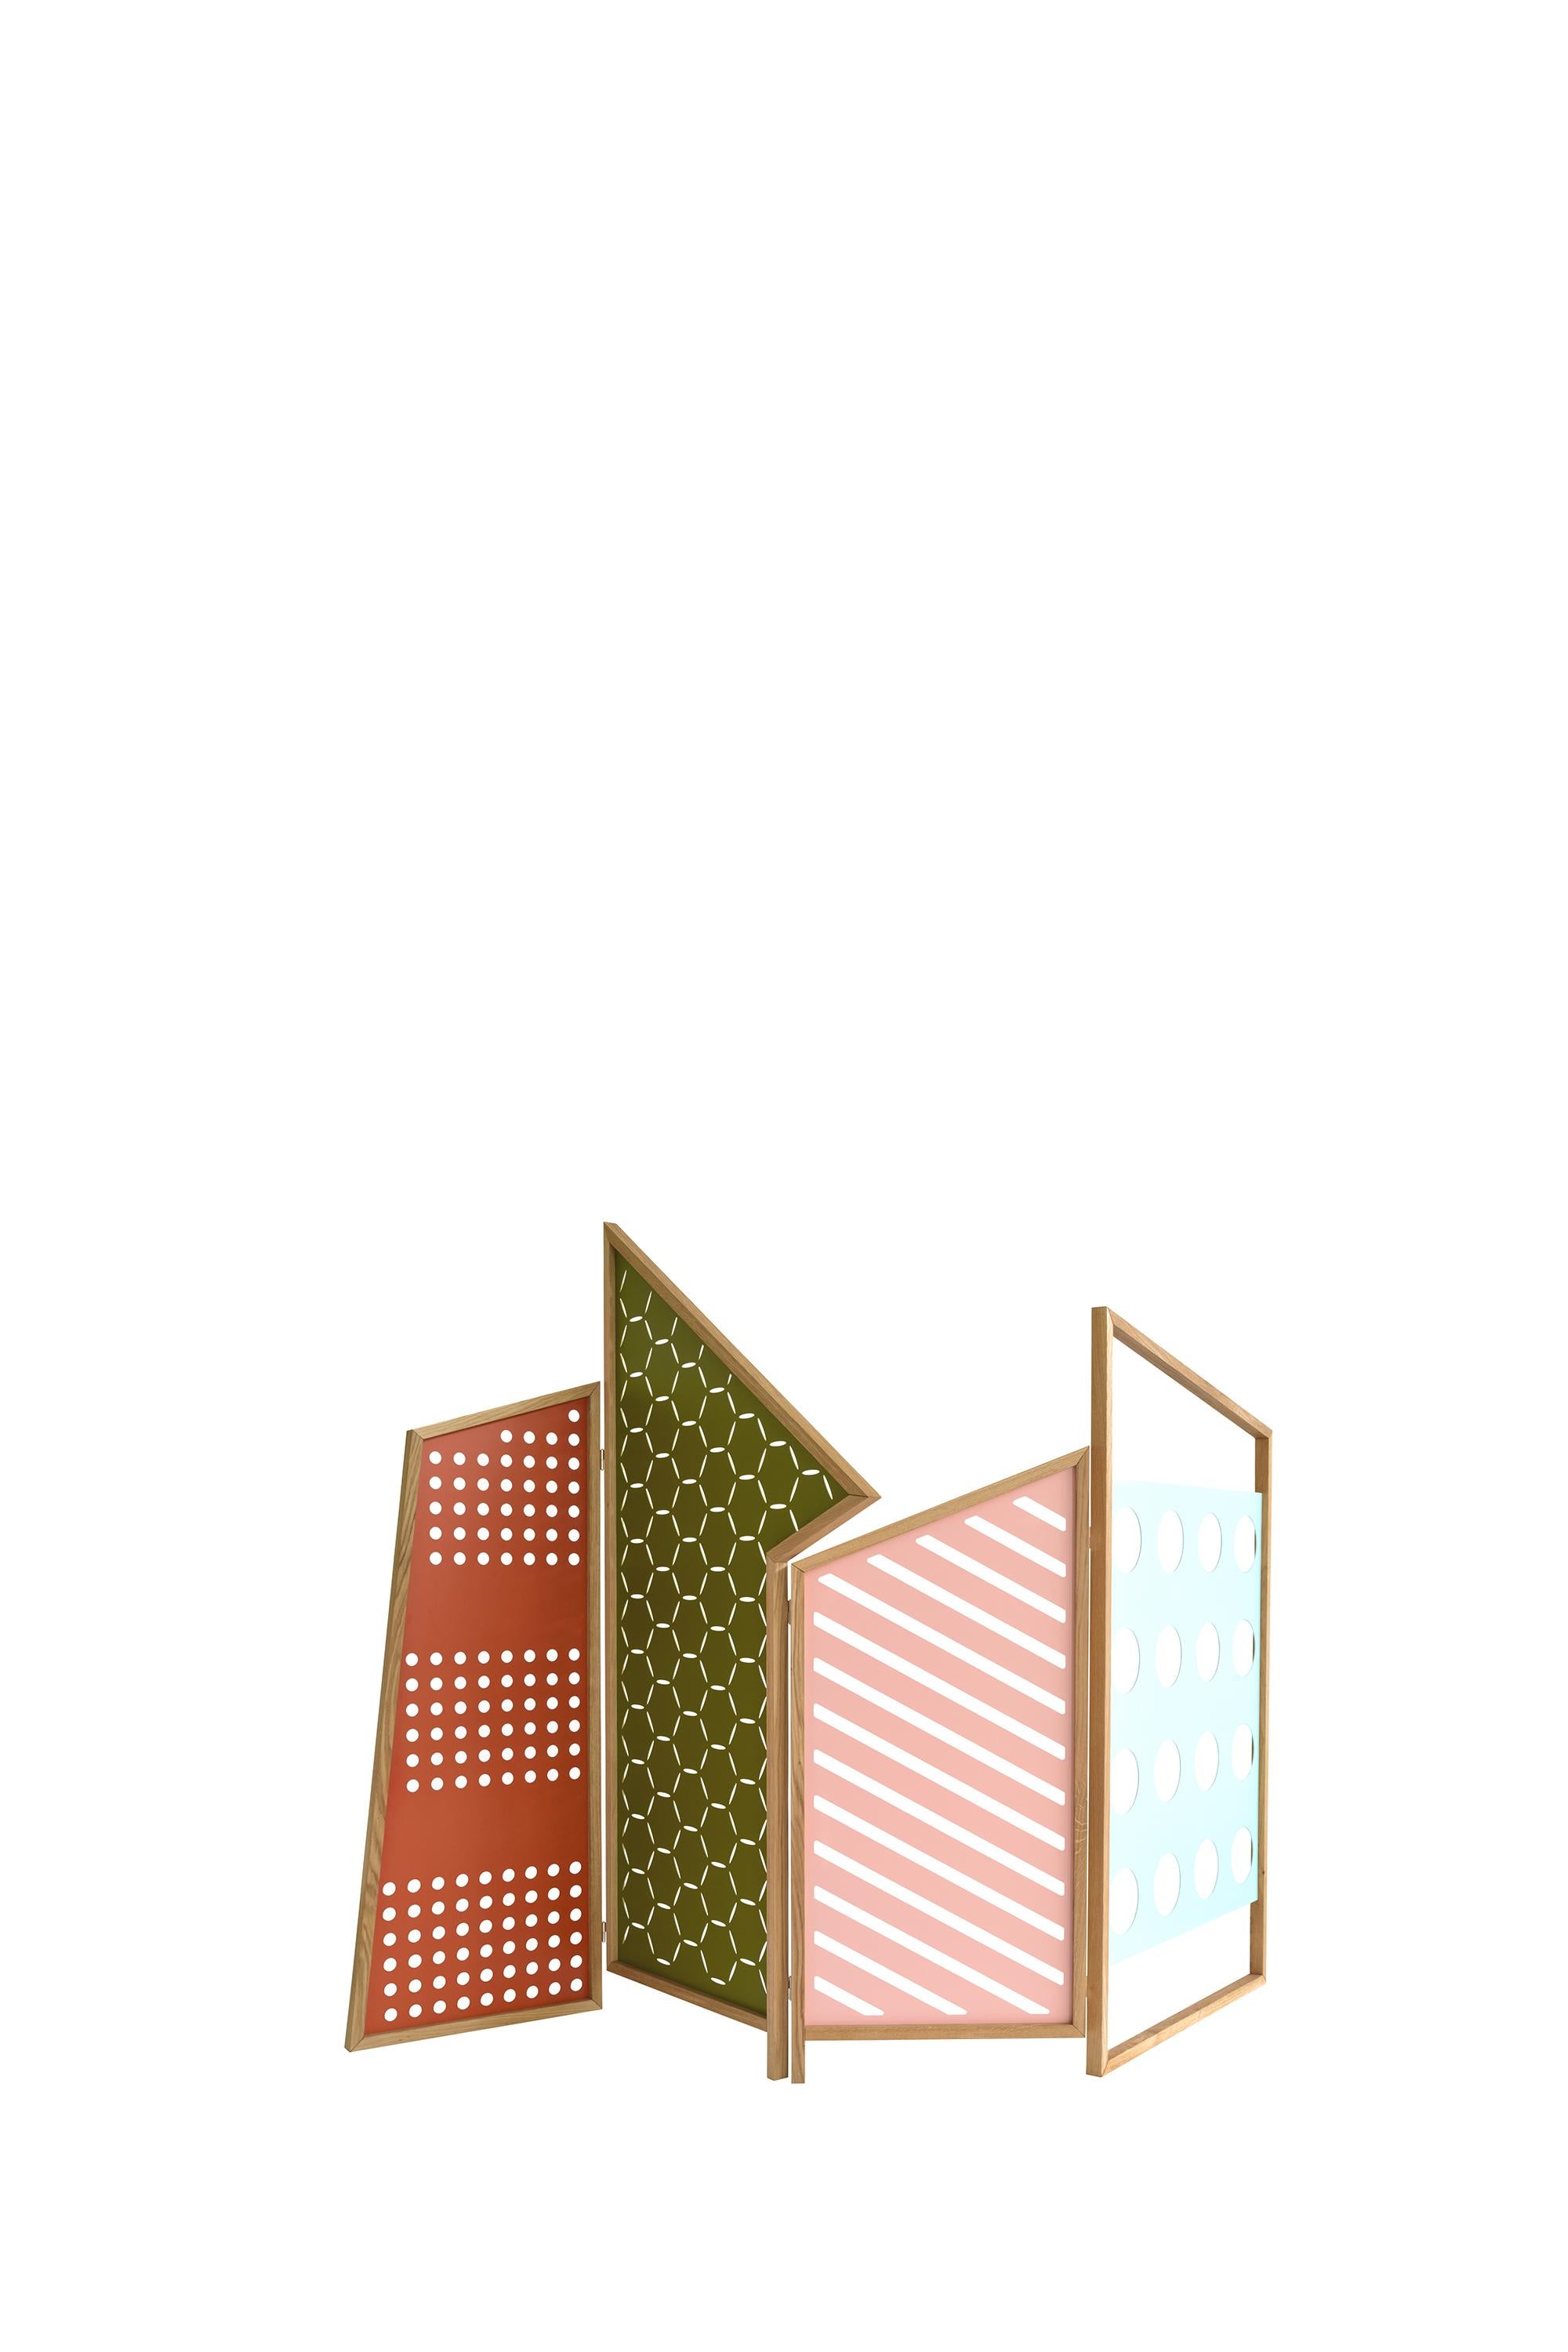 Opto-Faltwand 4 Farben Lackiert von Colé Italia mit Lorenz+Kaz
Abmessungen: H 200, B 300, T 4 cm
MATERIALIEN: Lasergeschnittene Metallplatten im Inneren des Rahmens, schwarz anthrazit oder lackiert in vier hellen Farben orange, grün, rosa,